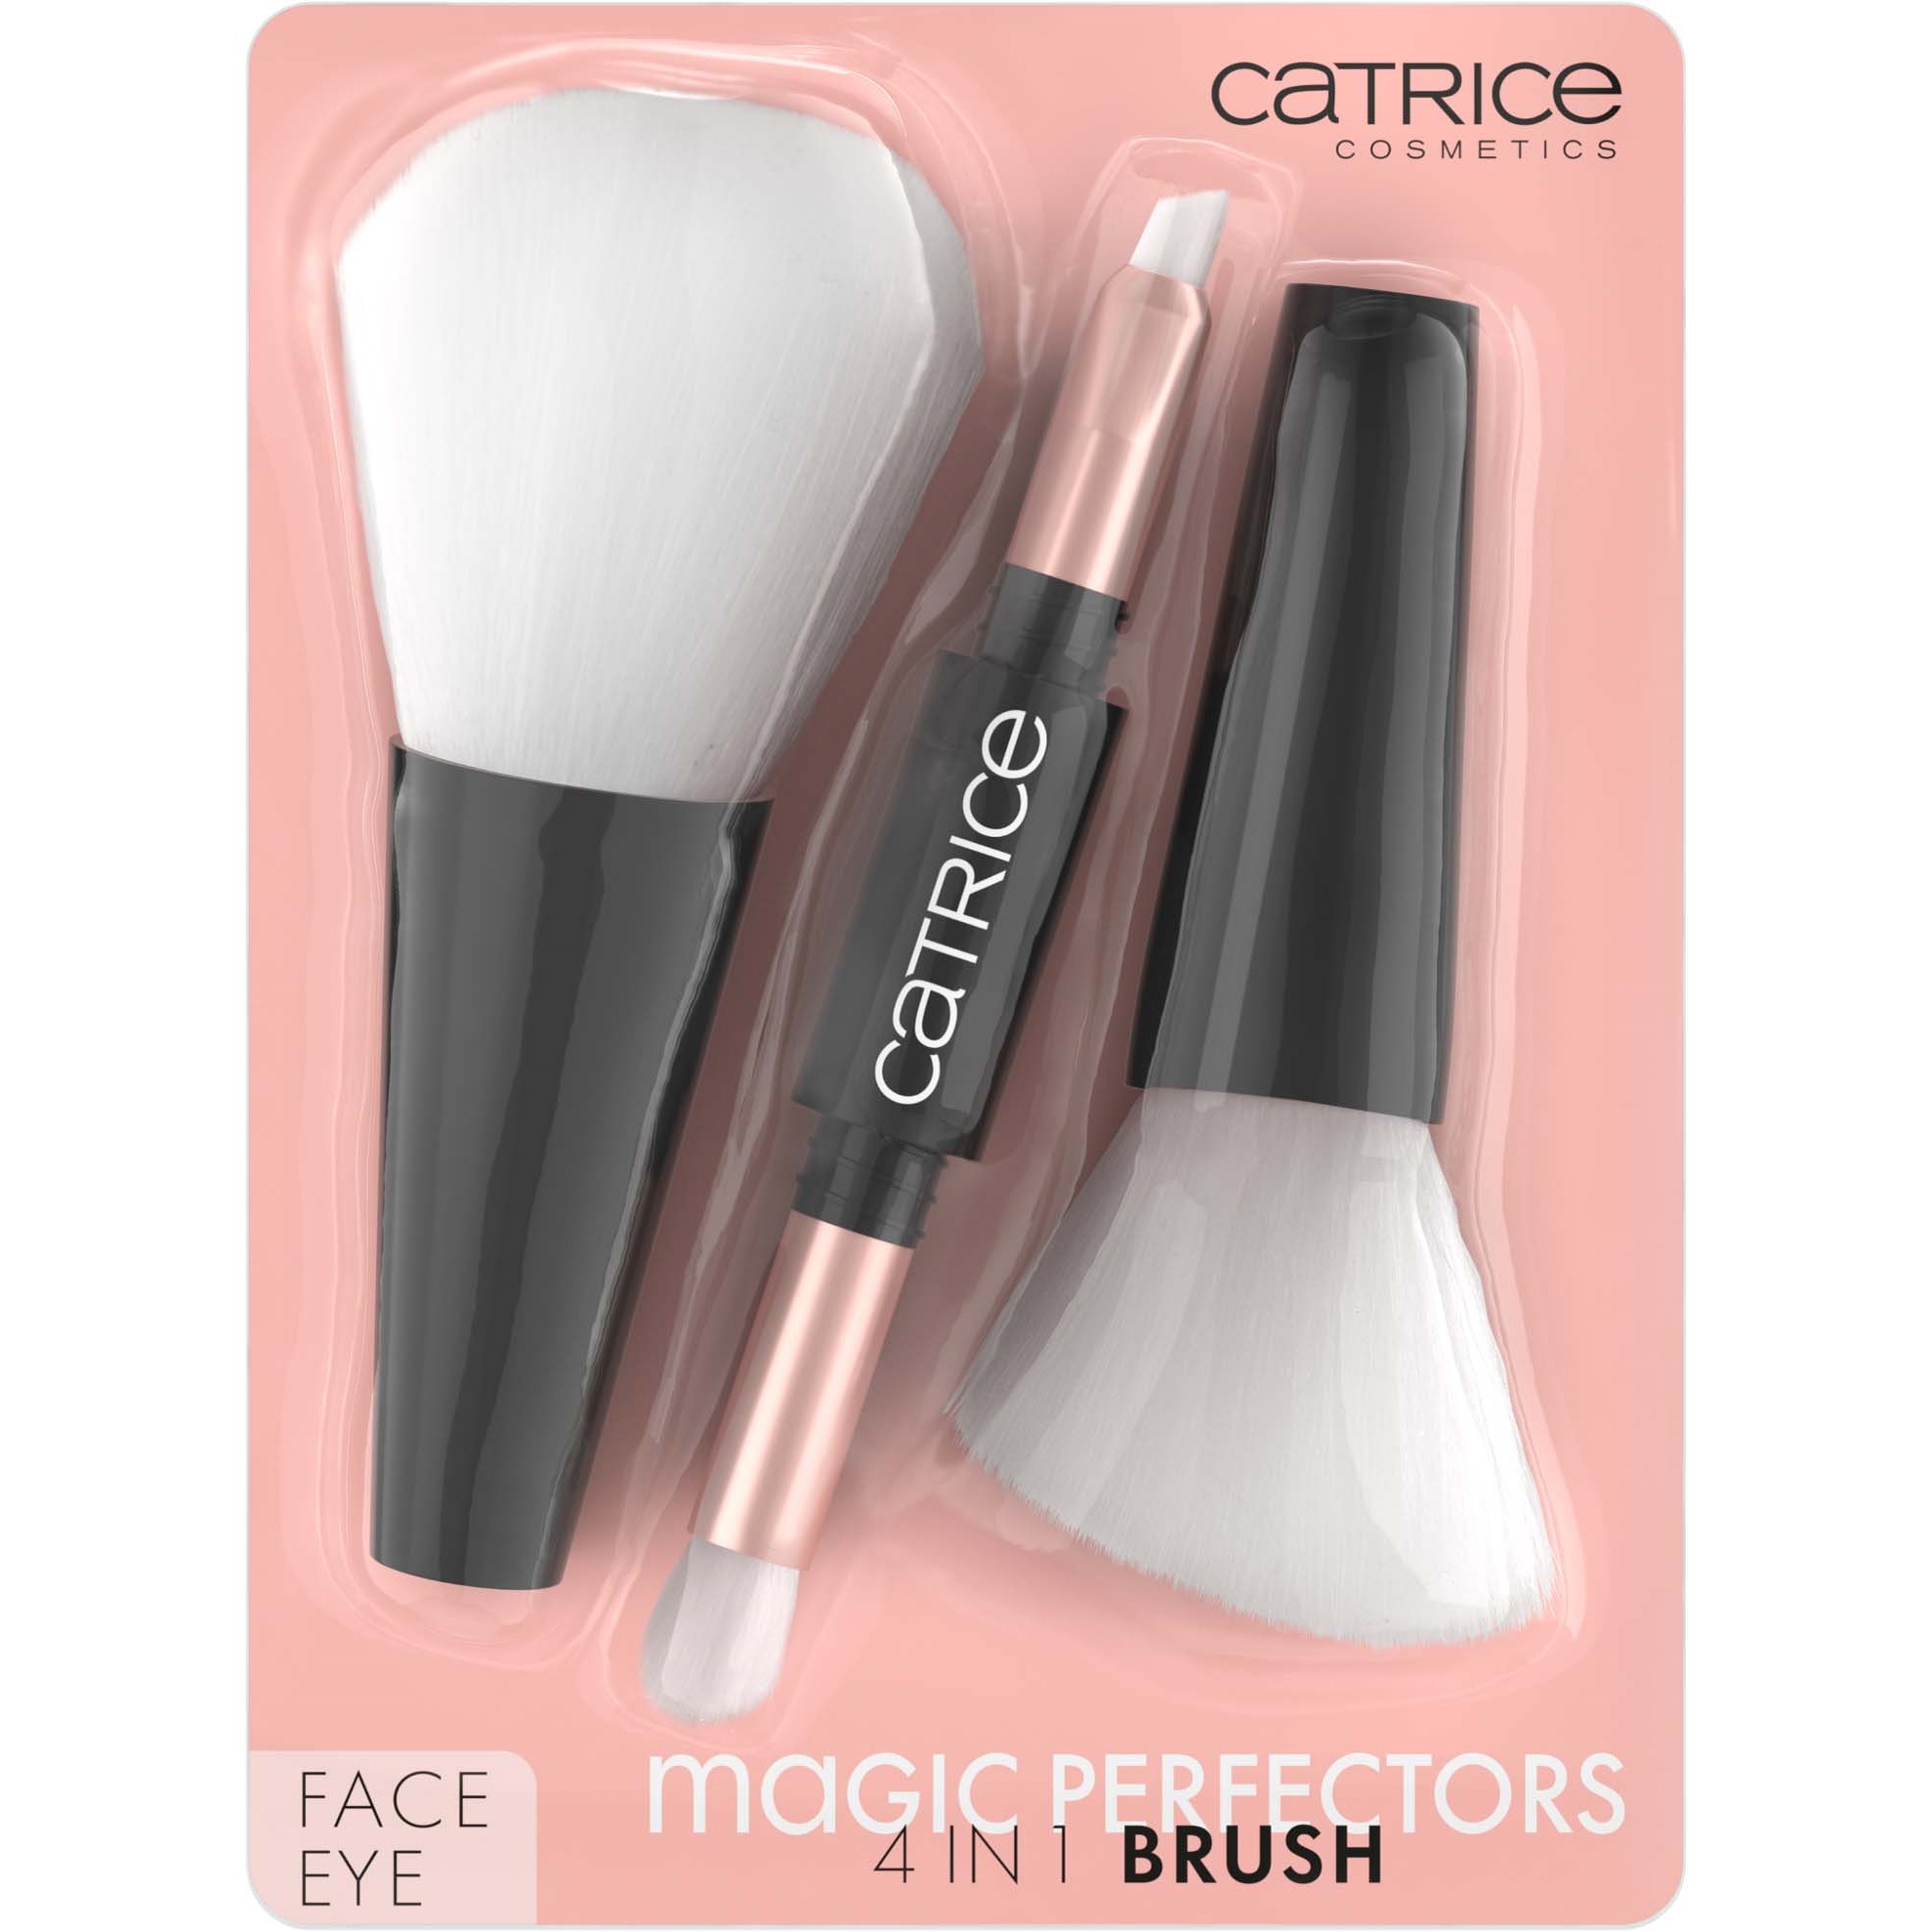 Catrice Magic Perfectors 4 in 1 Brush